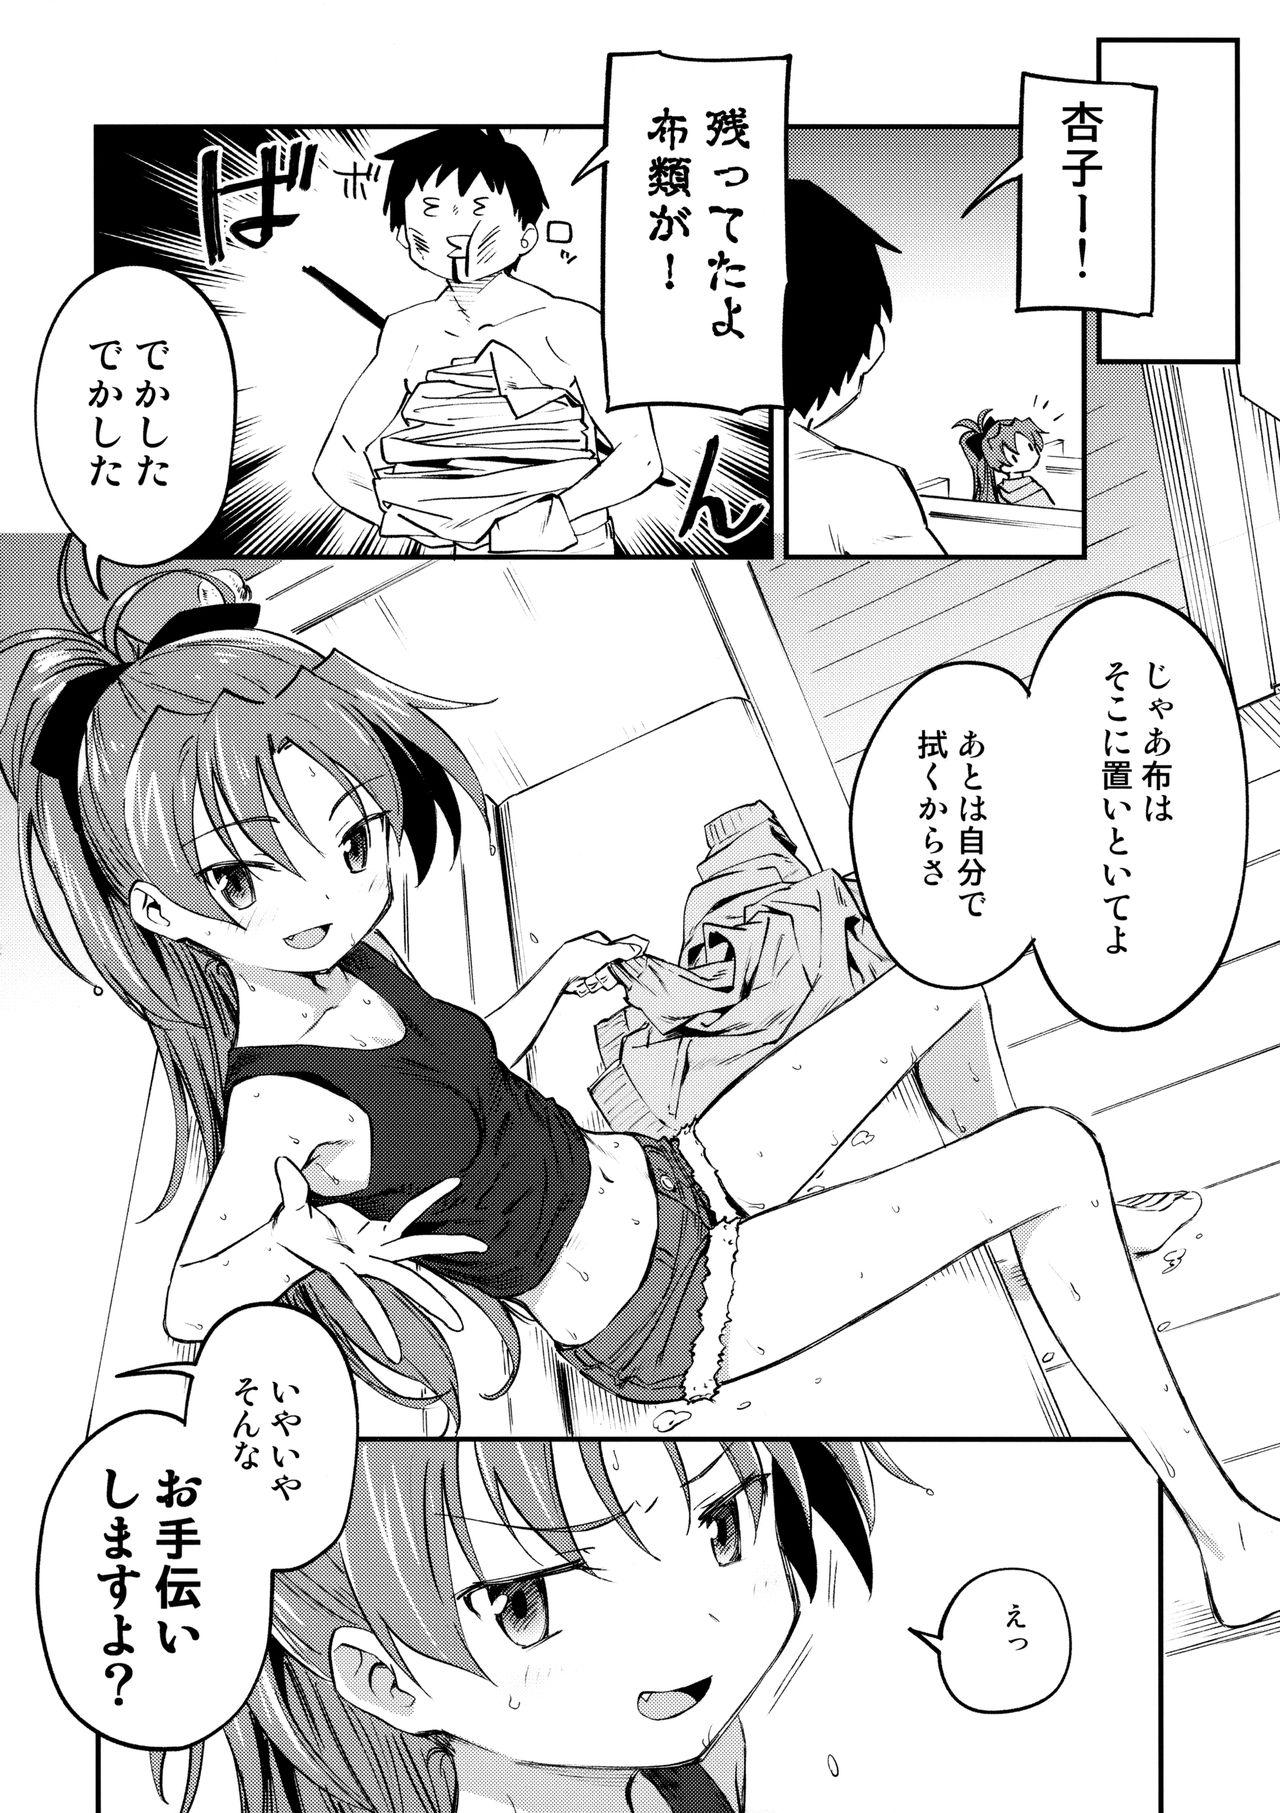 Roughsex Kyouko to Are Suru Hon 3 - Puella magi madoka magica Tied - Page 5